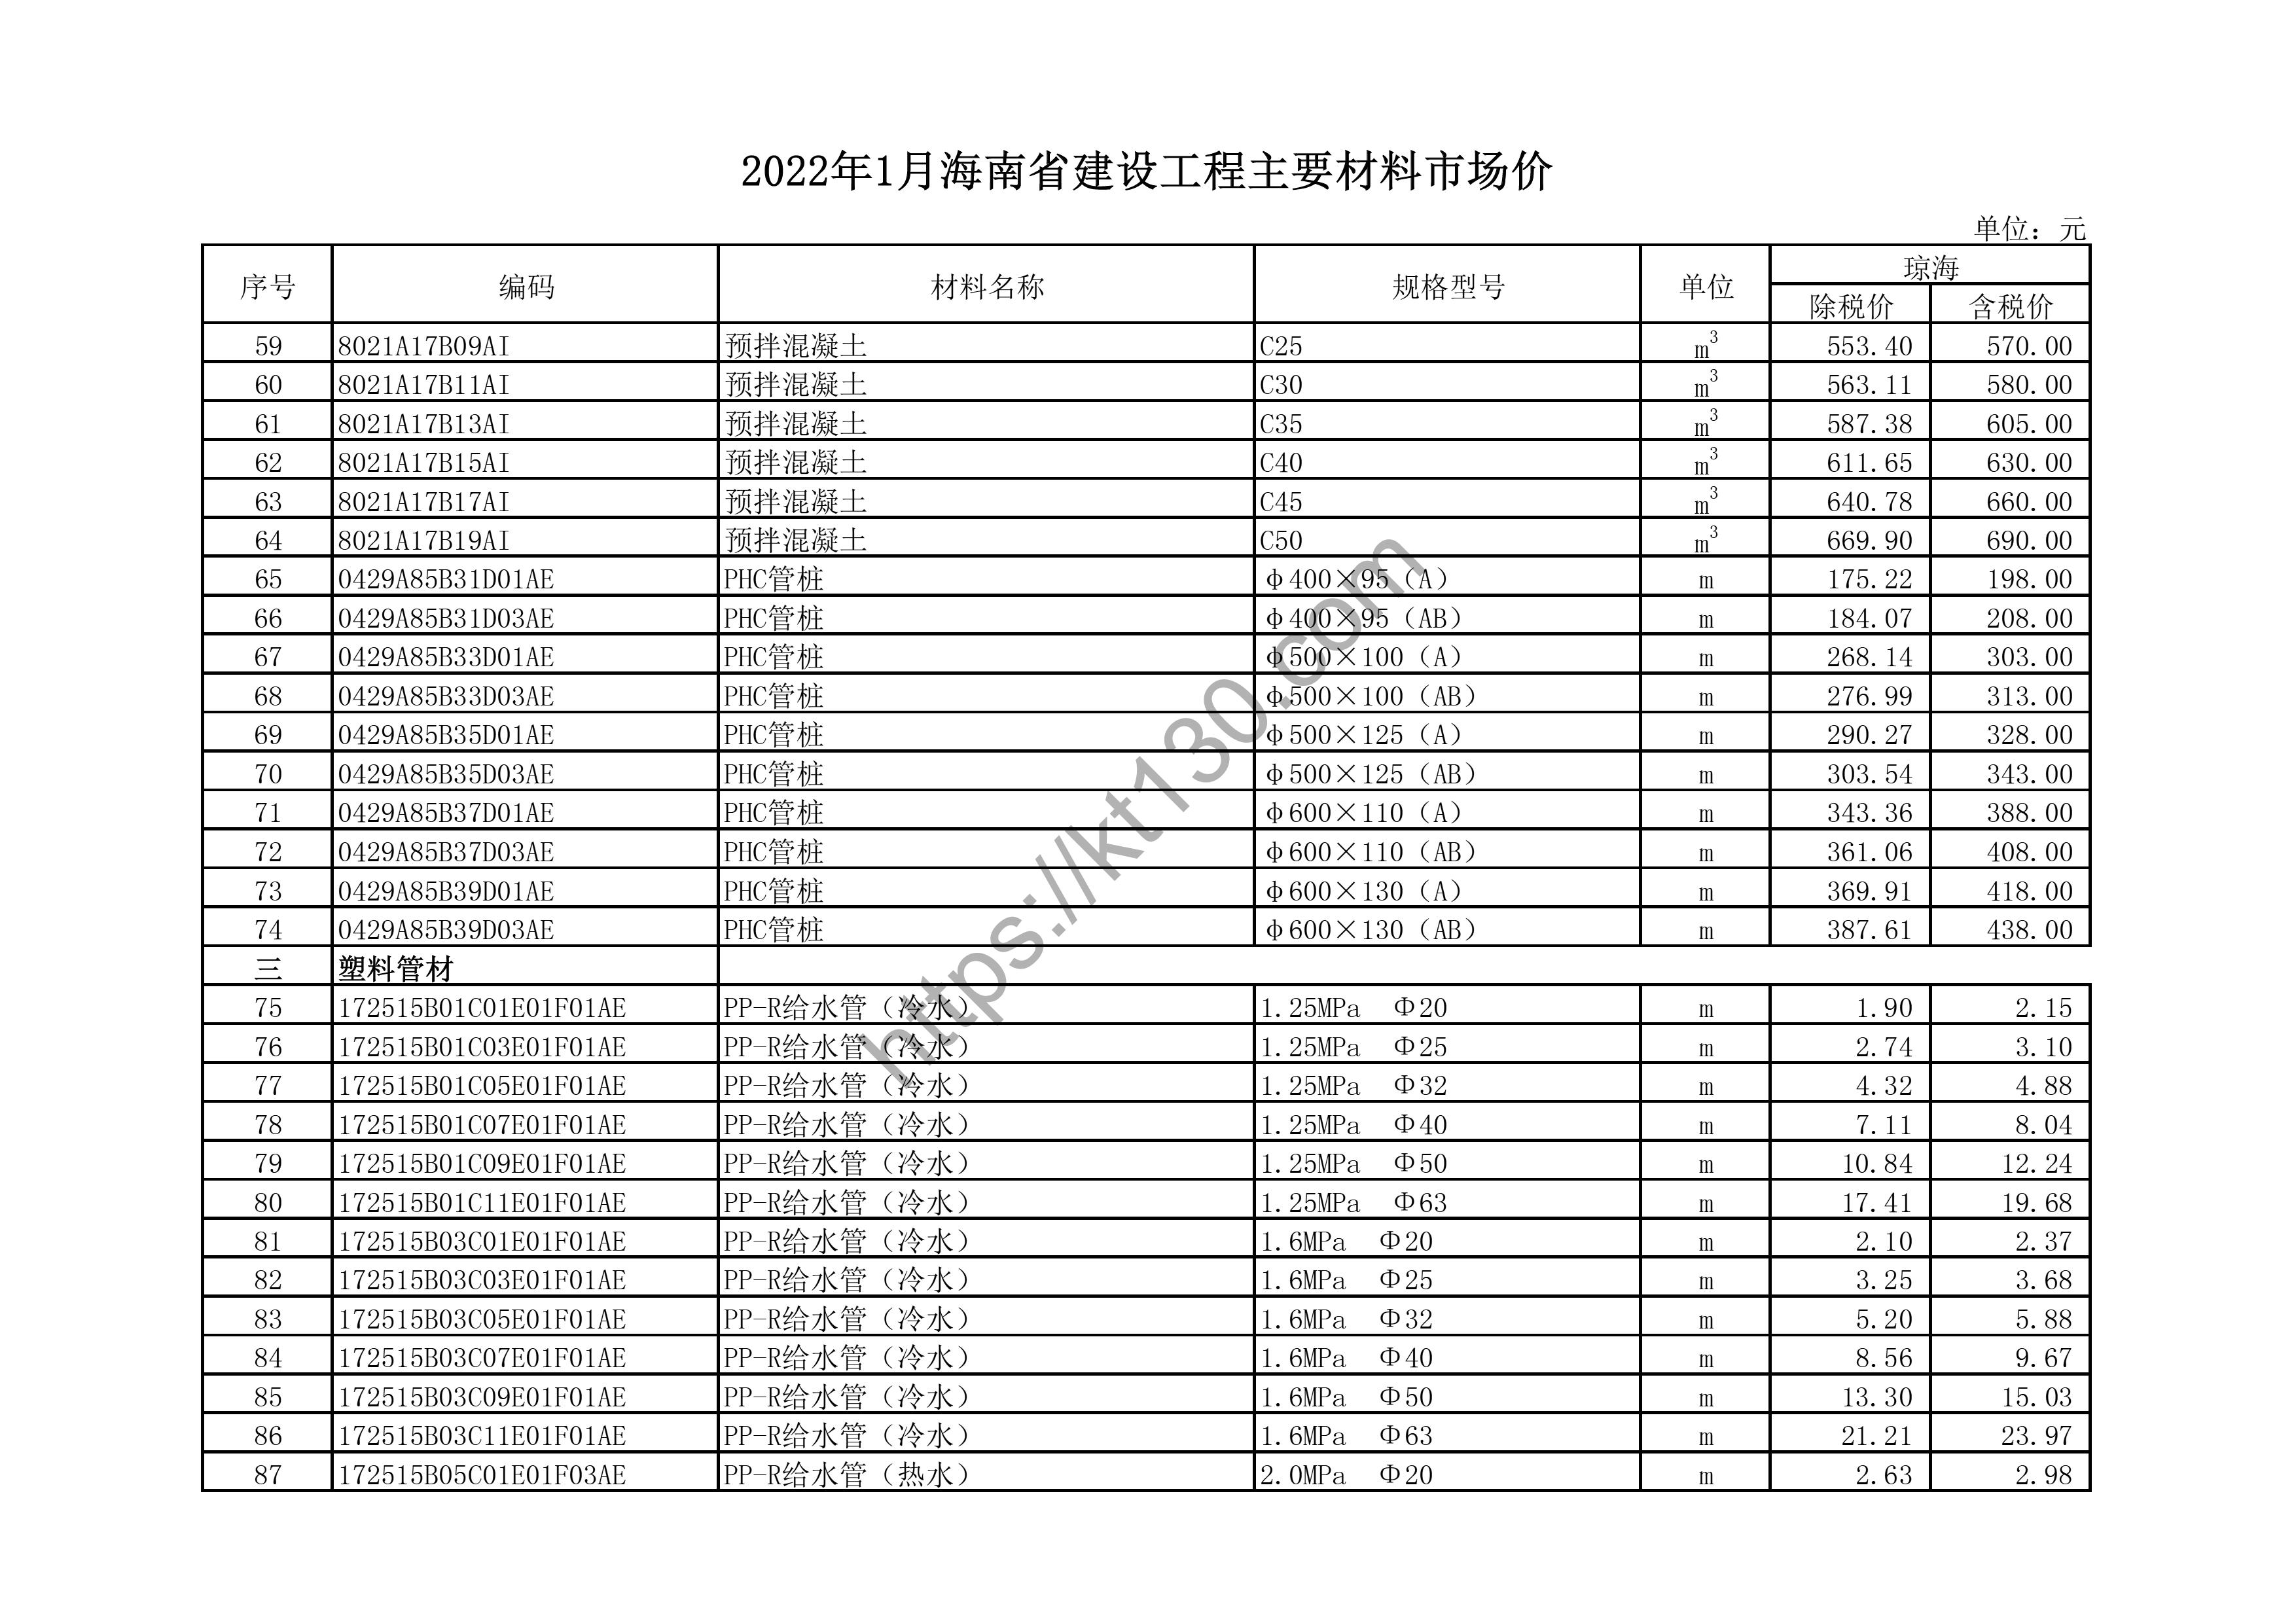 海南省2022年1月建筑材料价_高线_43651